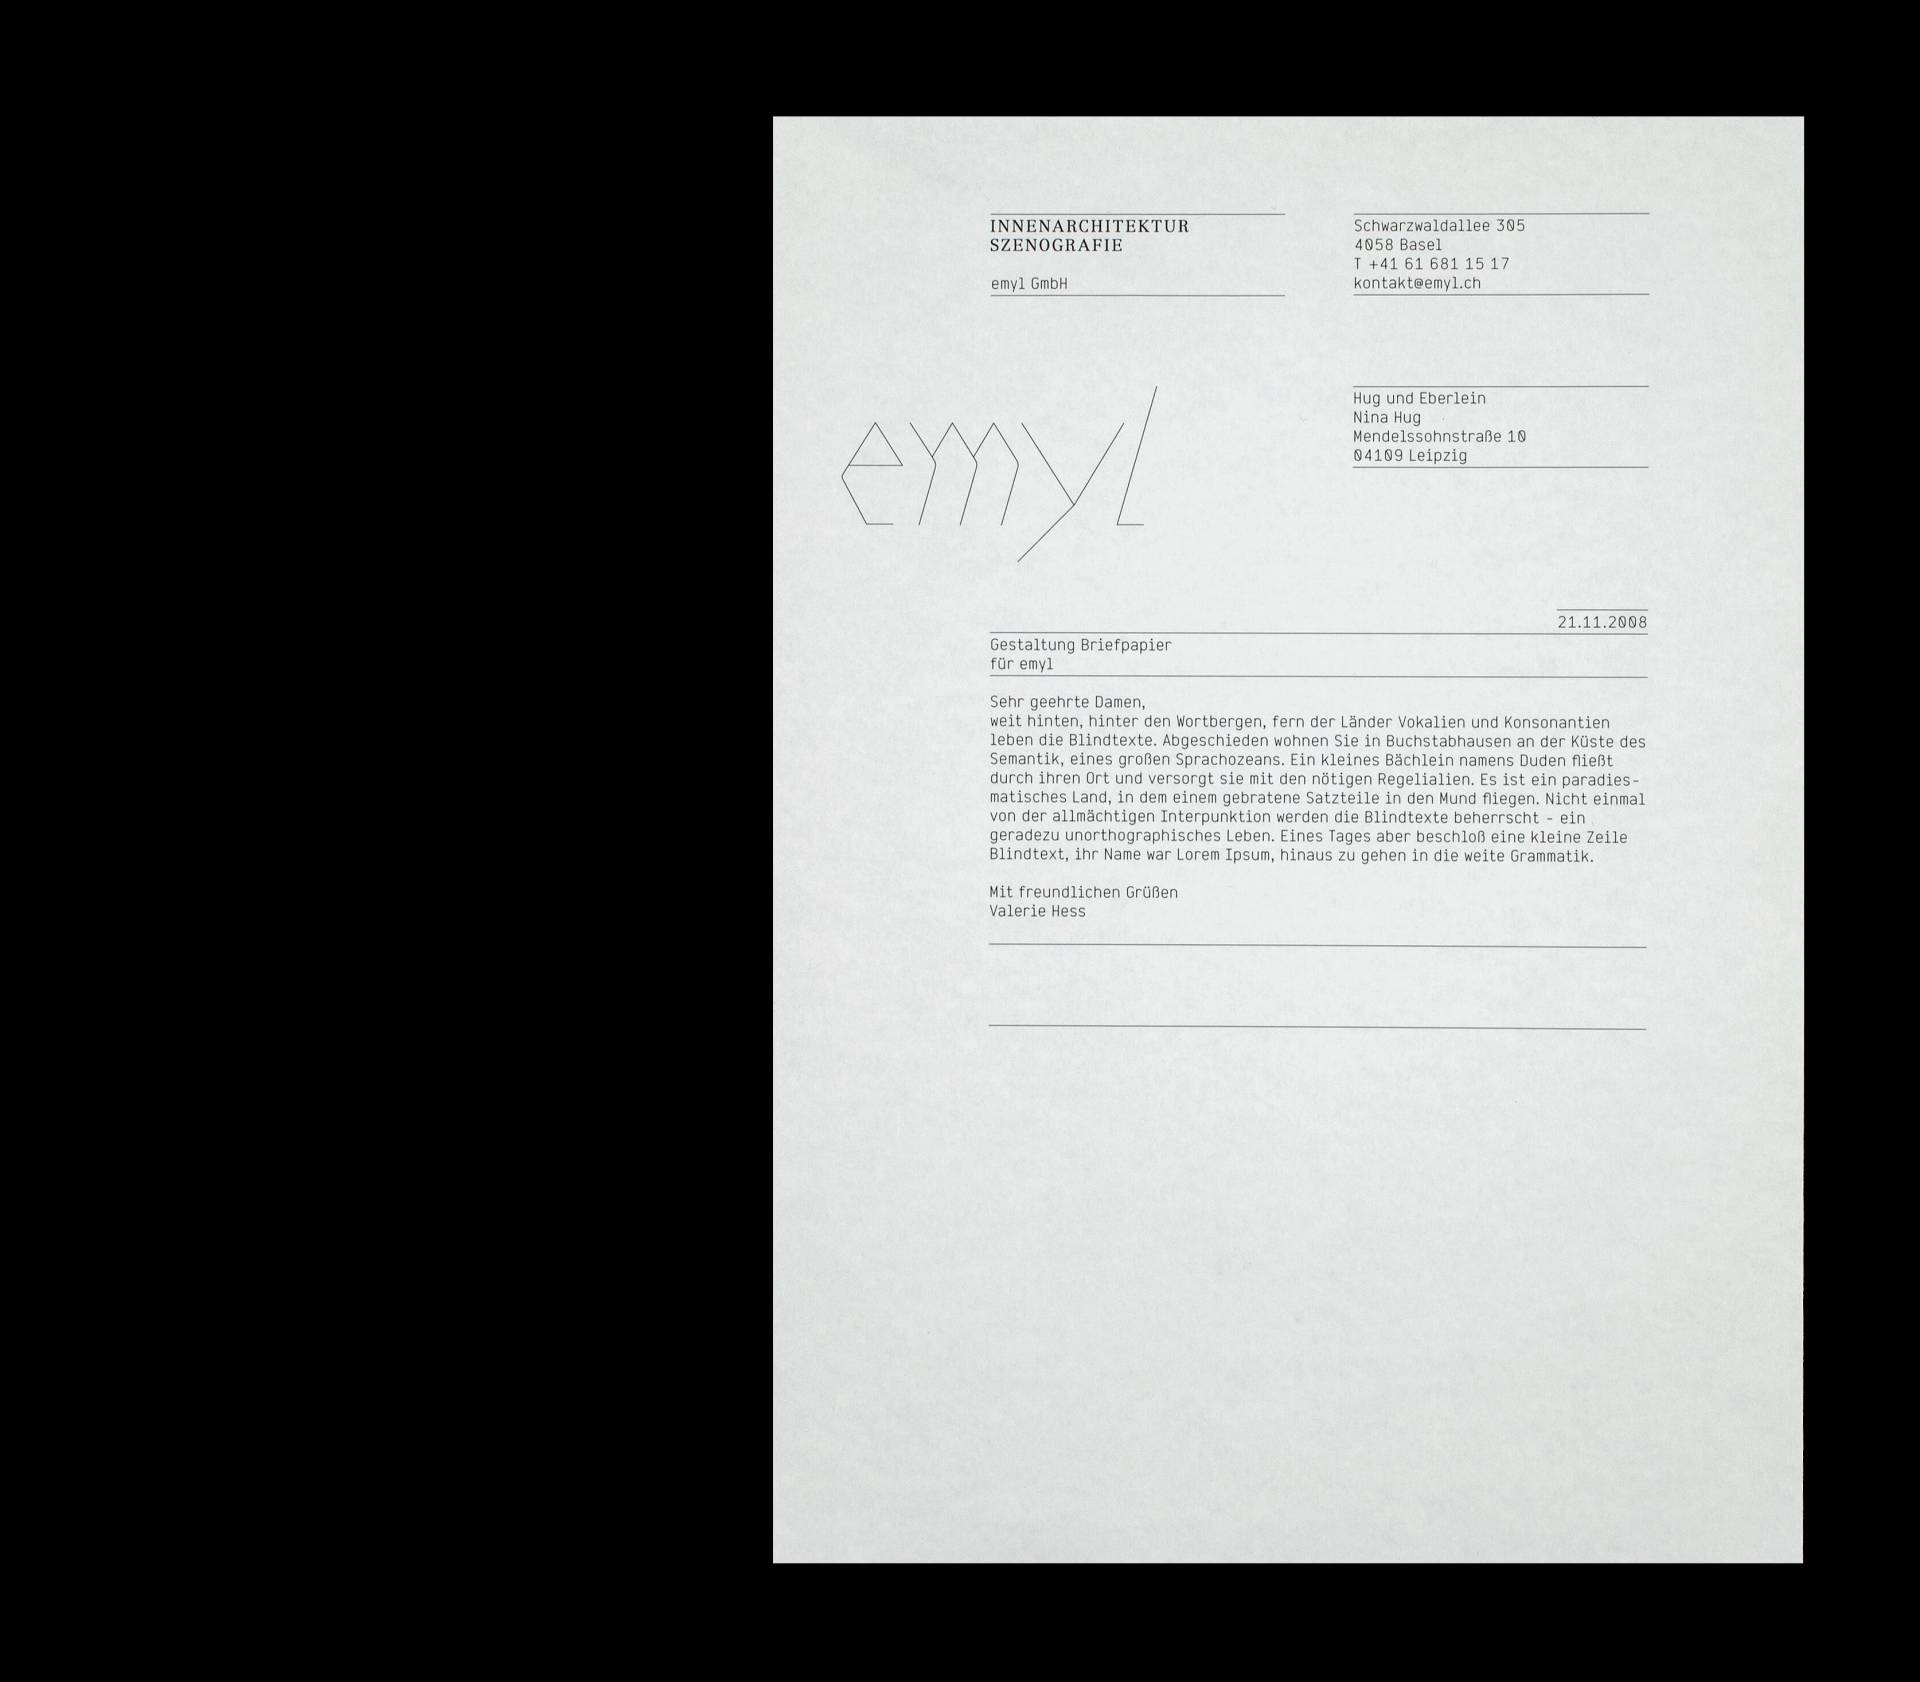 Visuelle Identität Emyl – Innenarchitektur und Szenografie, Basel